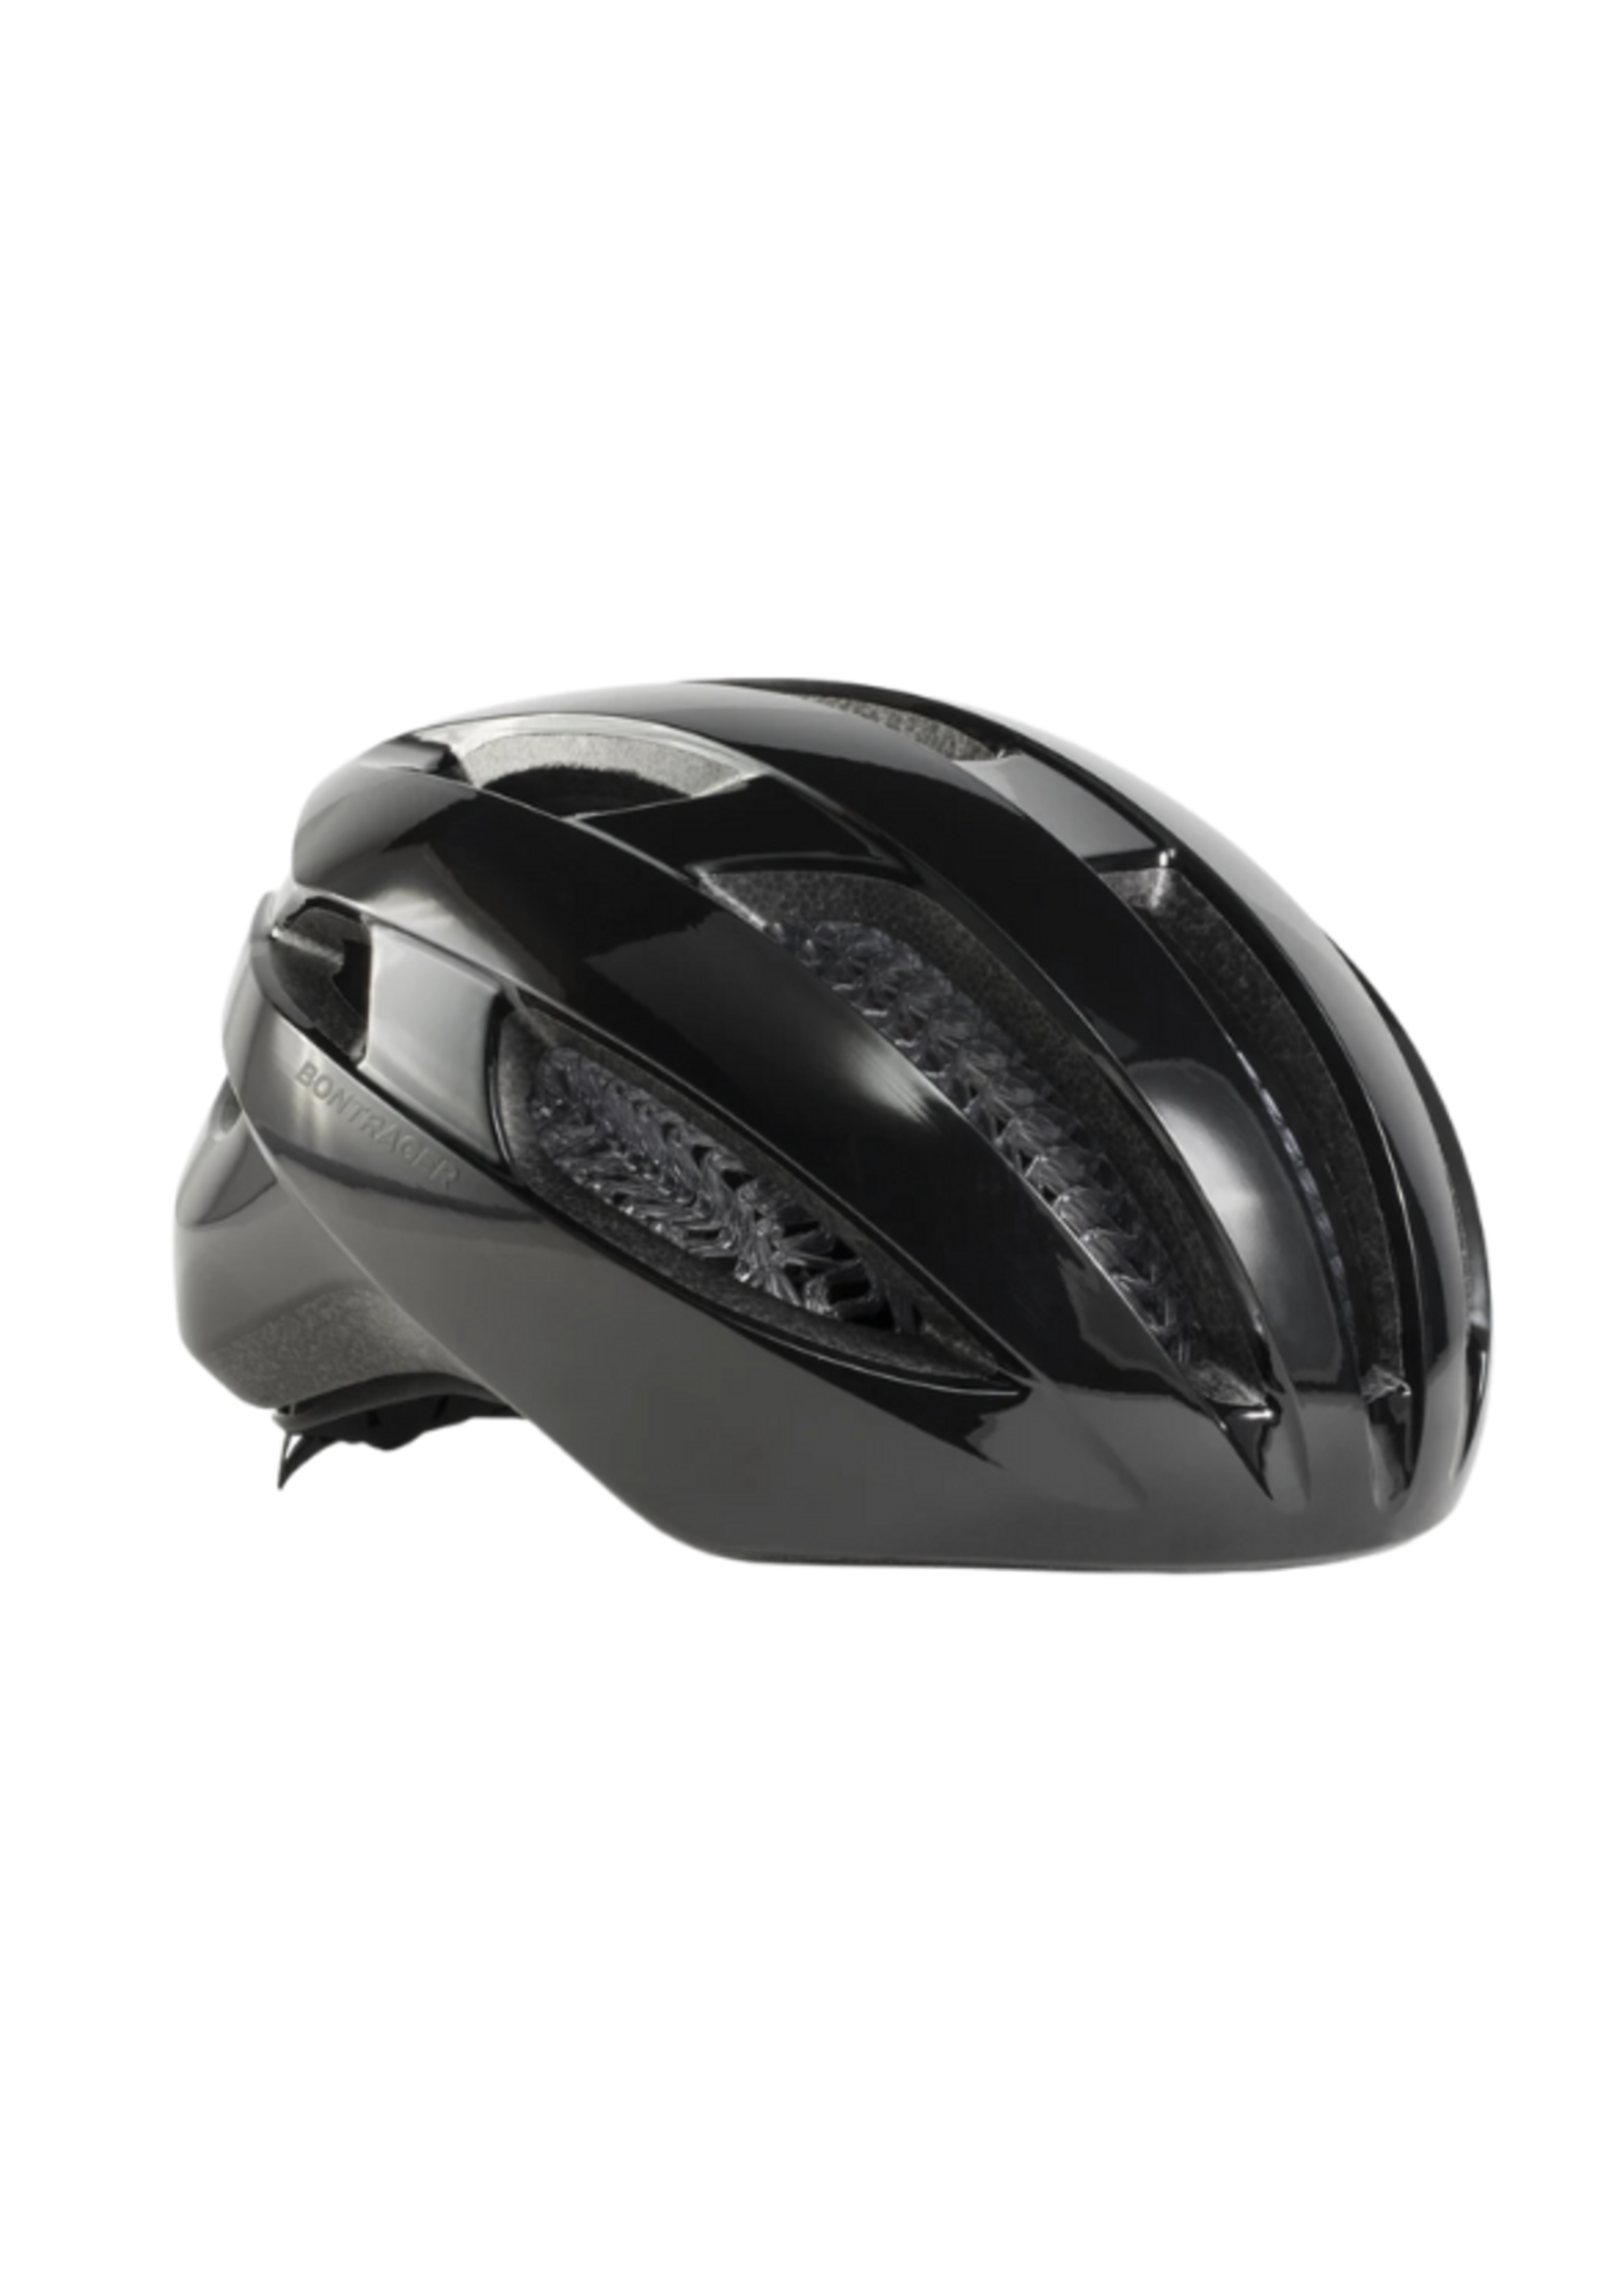 BONTRAGER Bontrager Starvos WaveCel Cycling Helmet